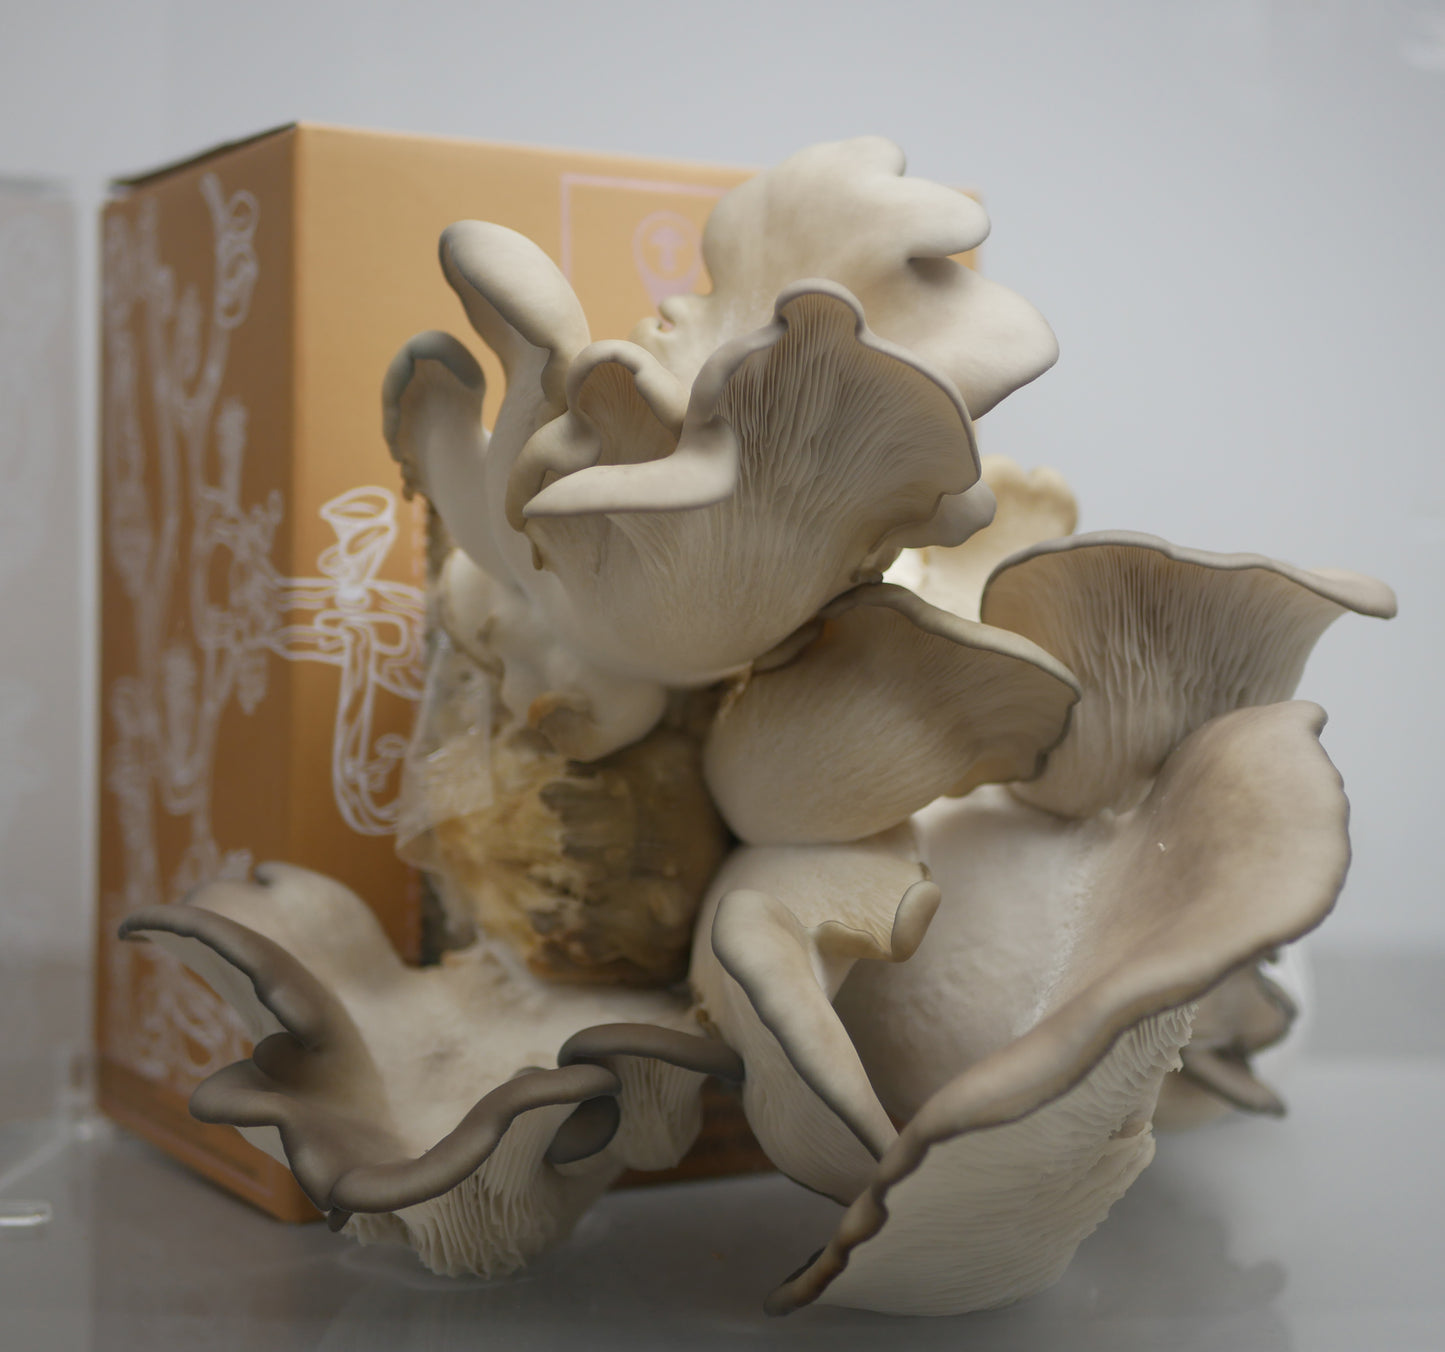 Kits de culture de champignons